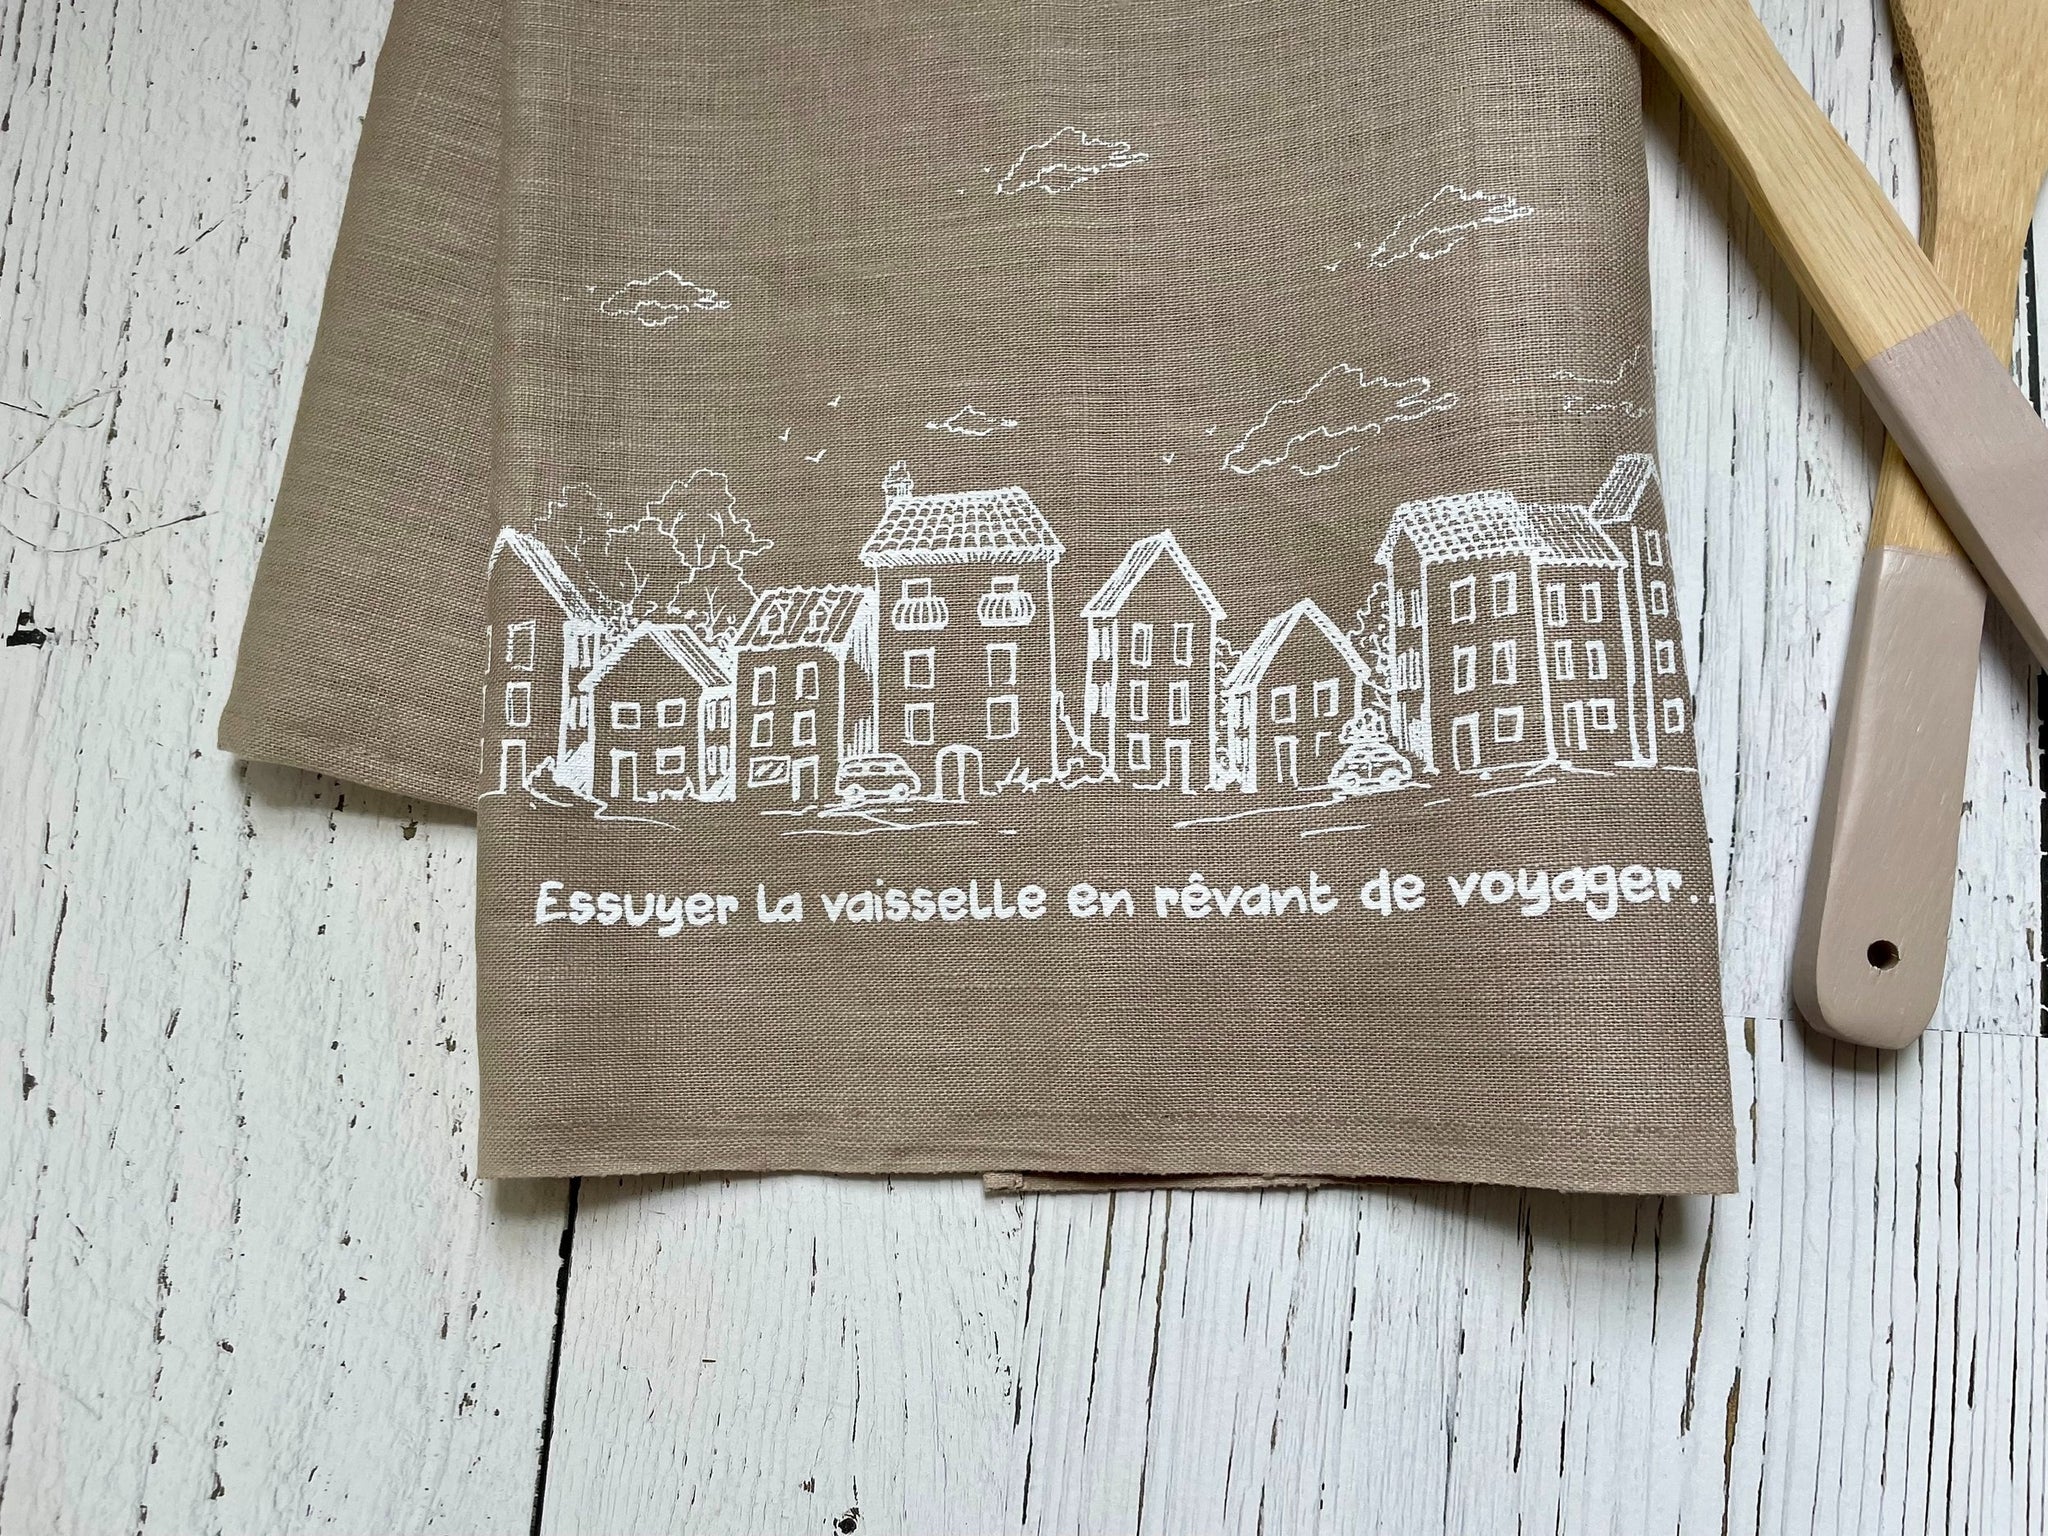 Linge à vaiselle en lin - Village européen - essuyer la vaisselle en rêvant de voyager